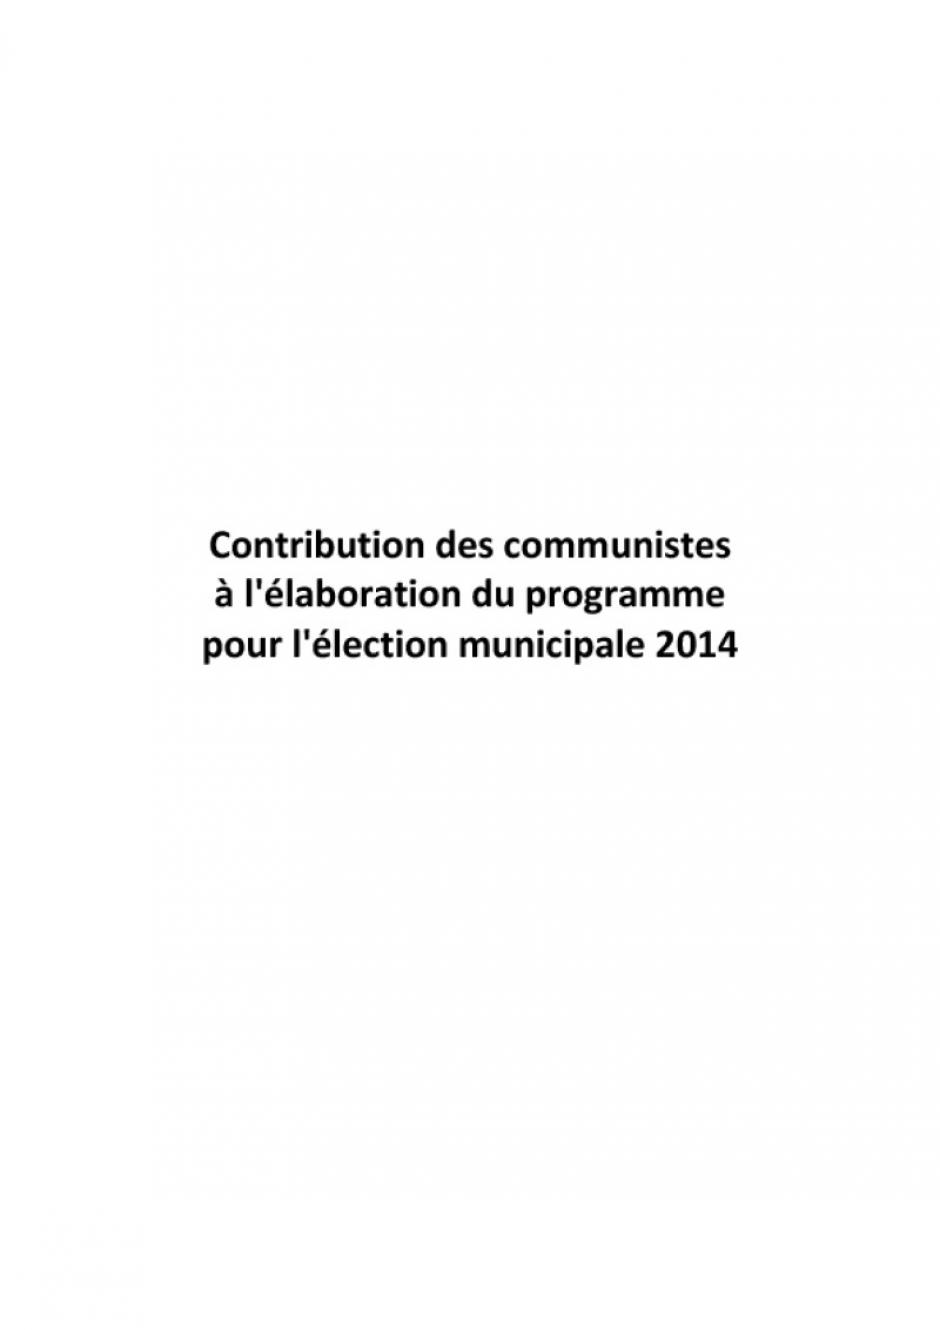 Municipales 2014 - contribution des communistes